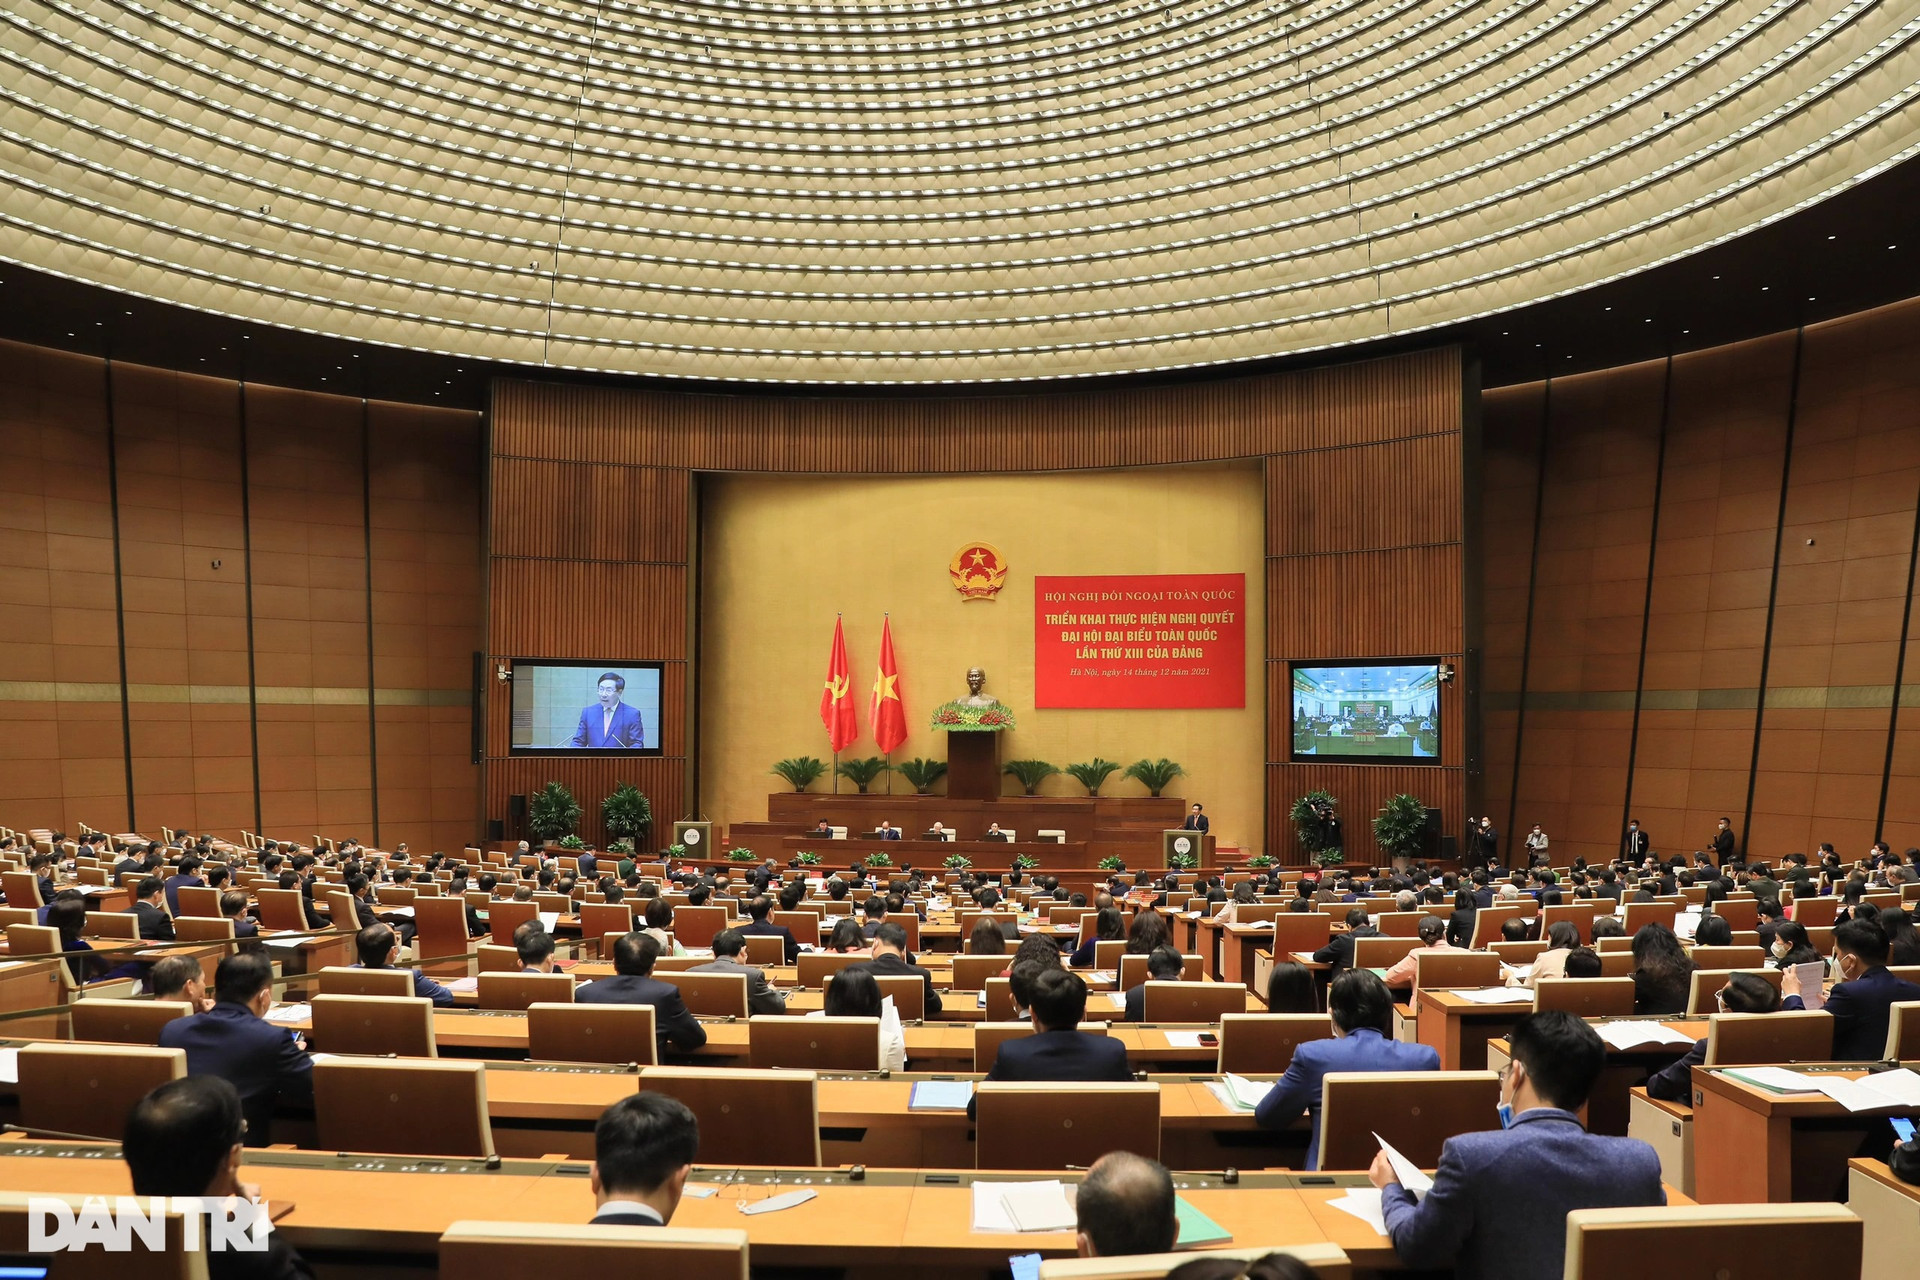 Toàn cảnh Hội nghị Đối ngoại toàn quốc diễn ra trọng thể tại Hà Nội - 7